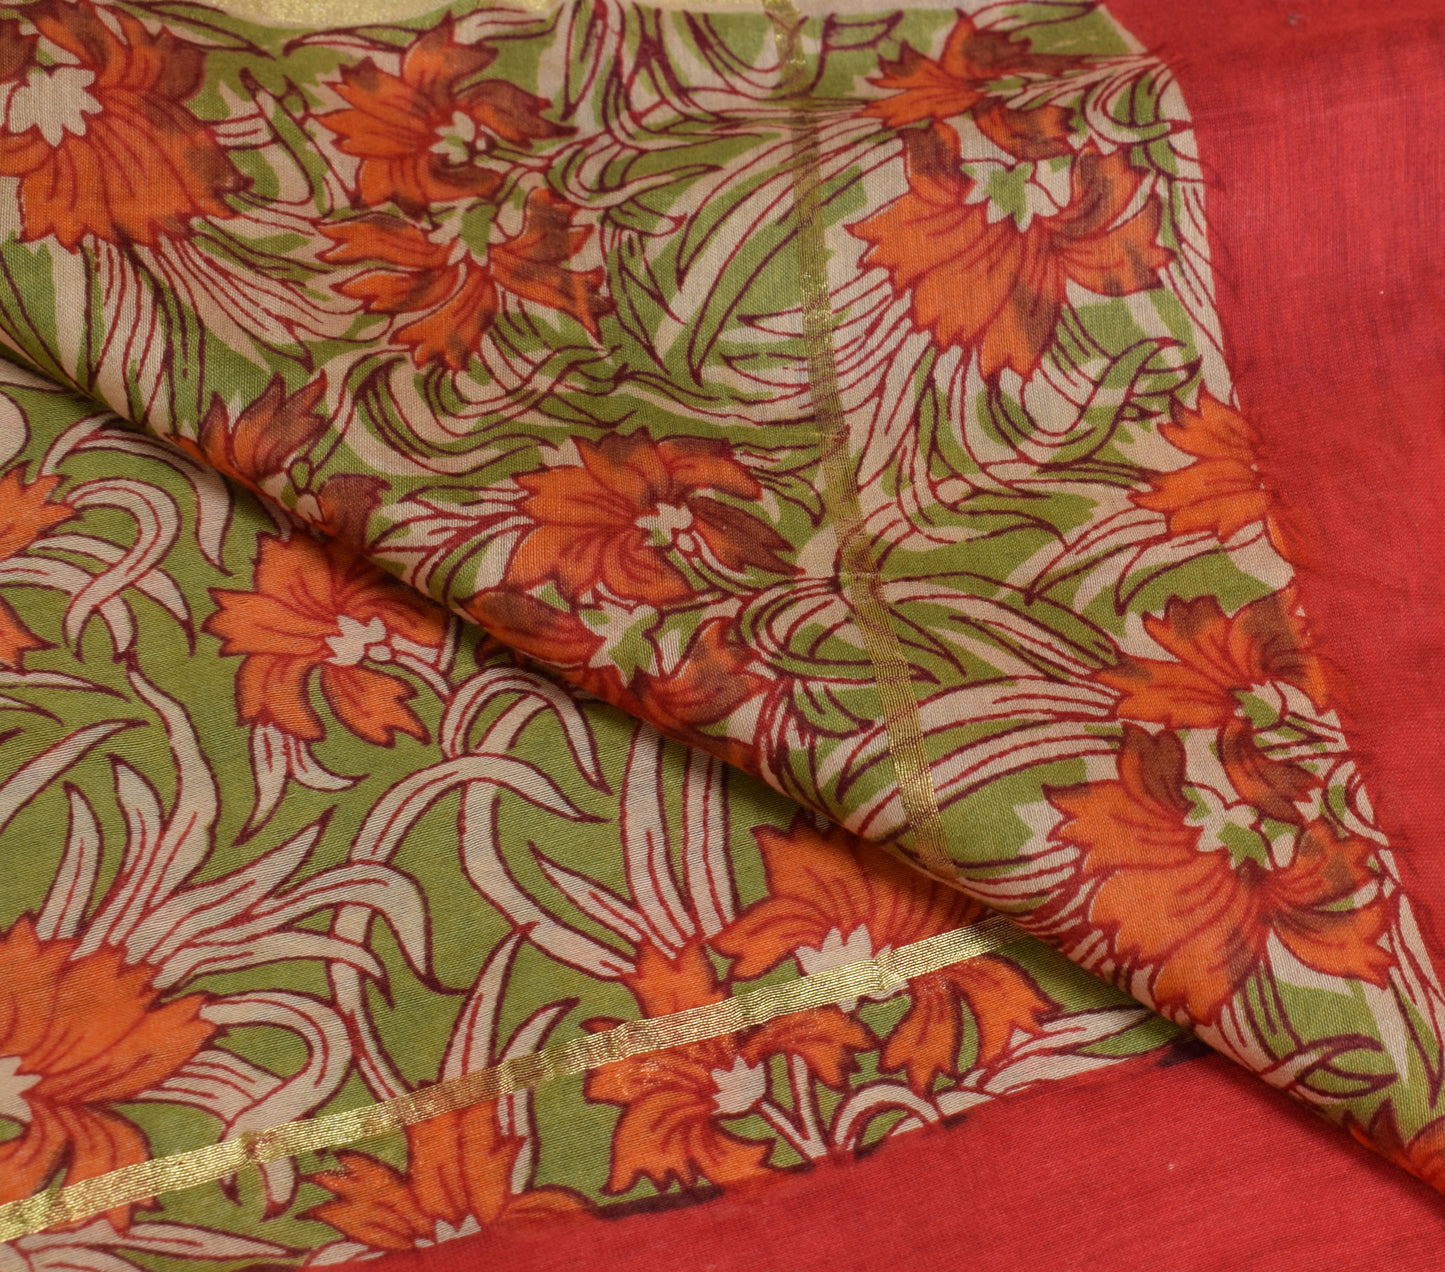 Sushila Vintage Red Scrap Dupatta 100%Pure Cotton Printed Floral Long Stole Veil